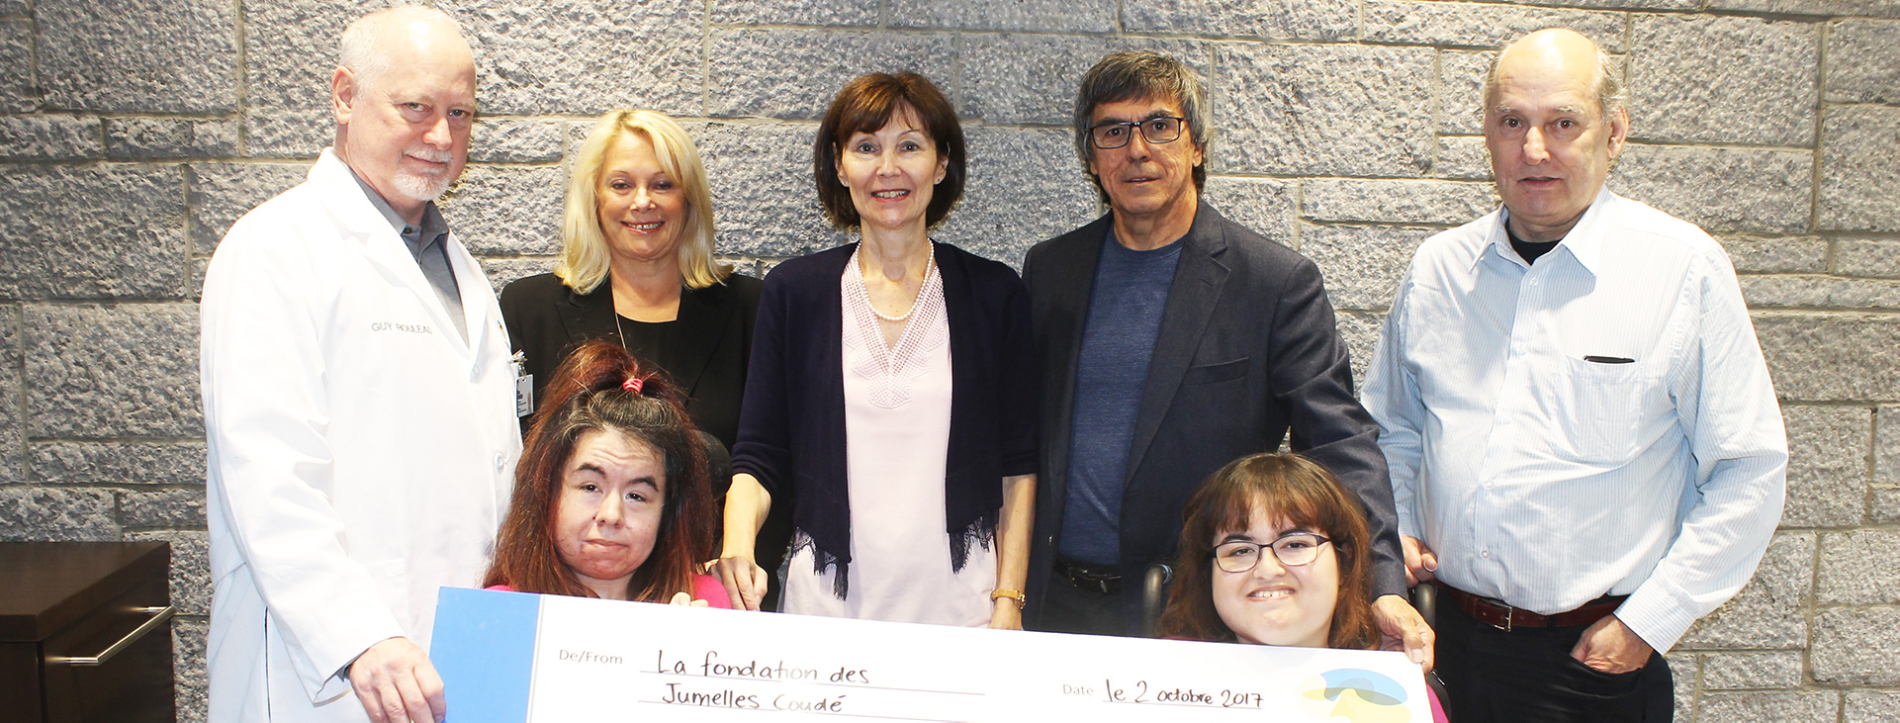 Dr Guy Rouleau accepts donation from La Fondation des Jumelles Coudé 